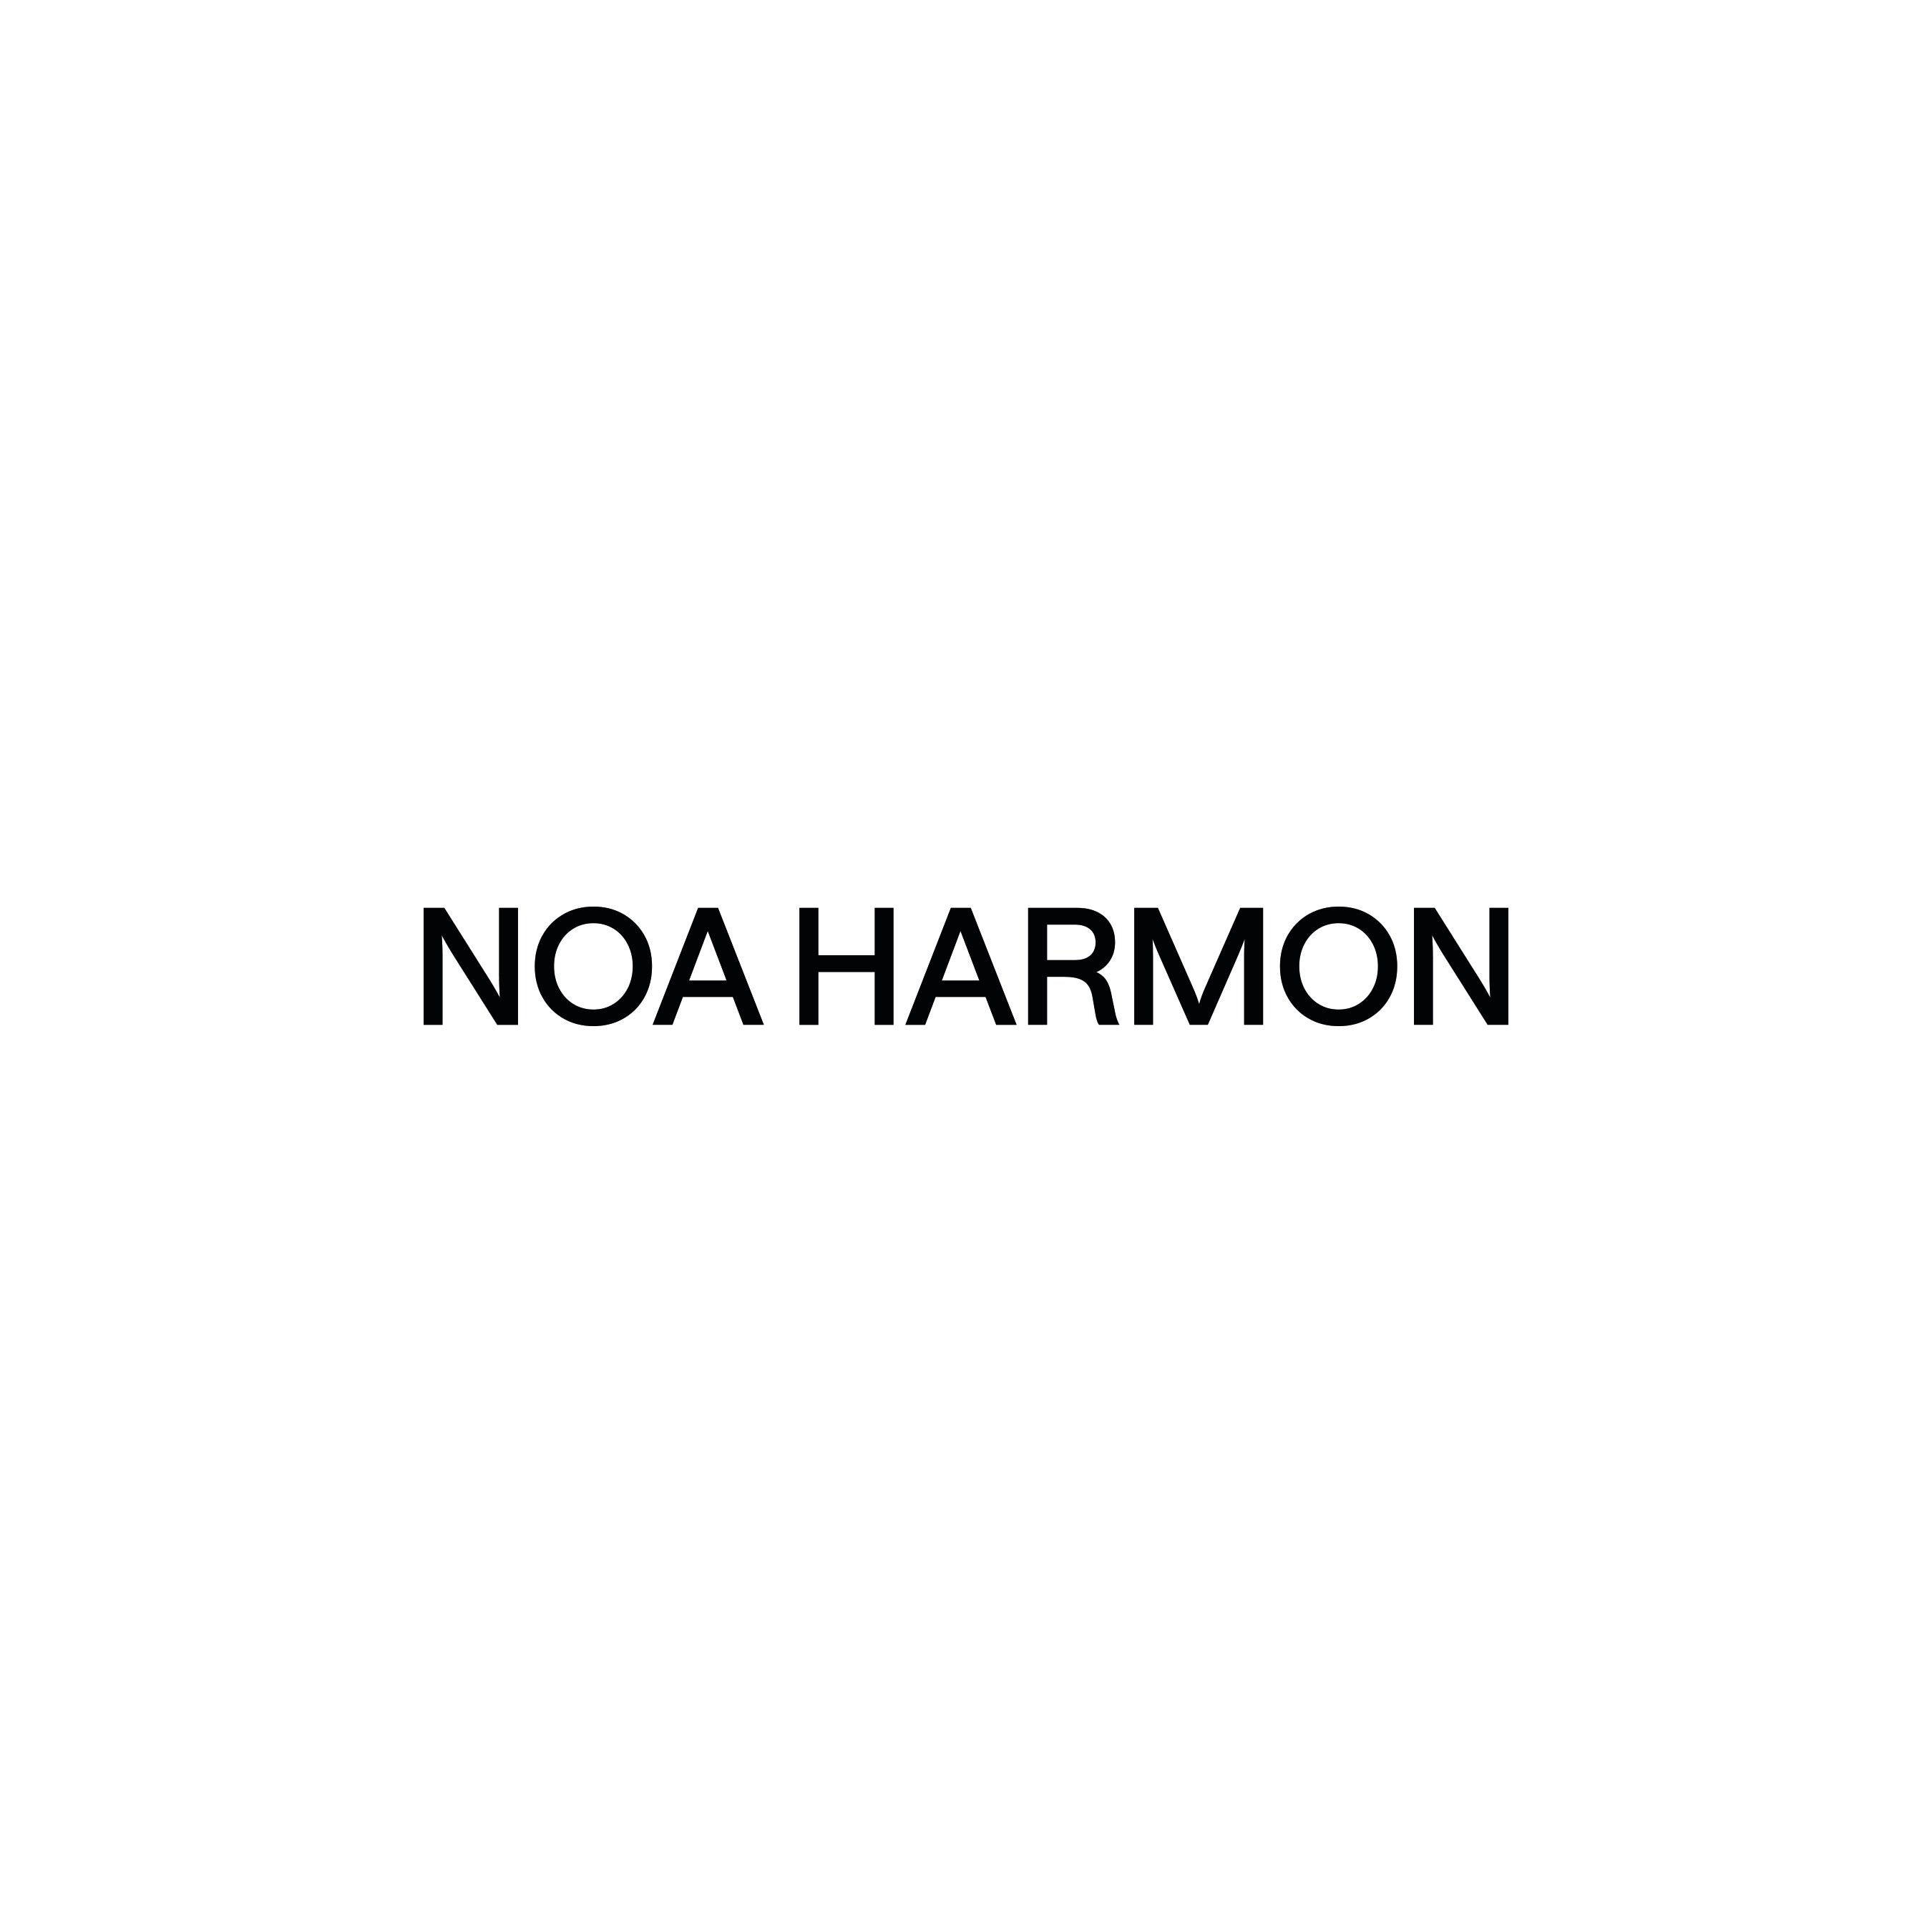 Noa Harmon